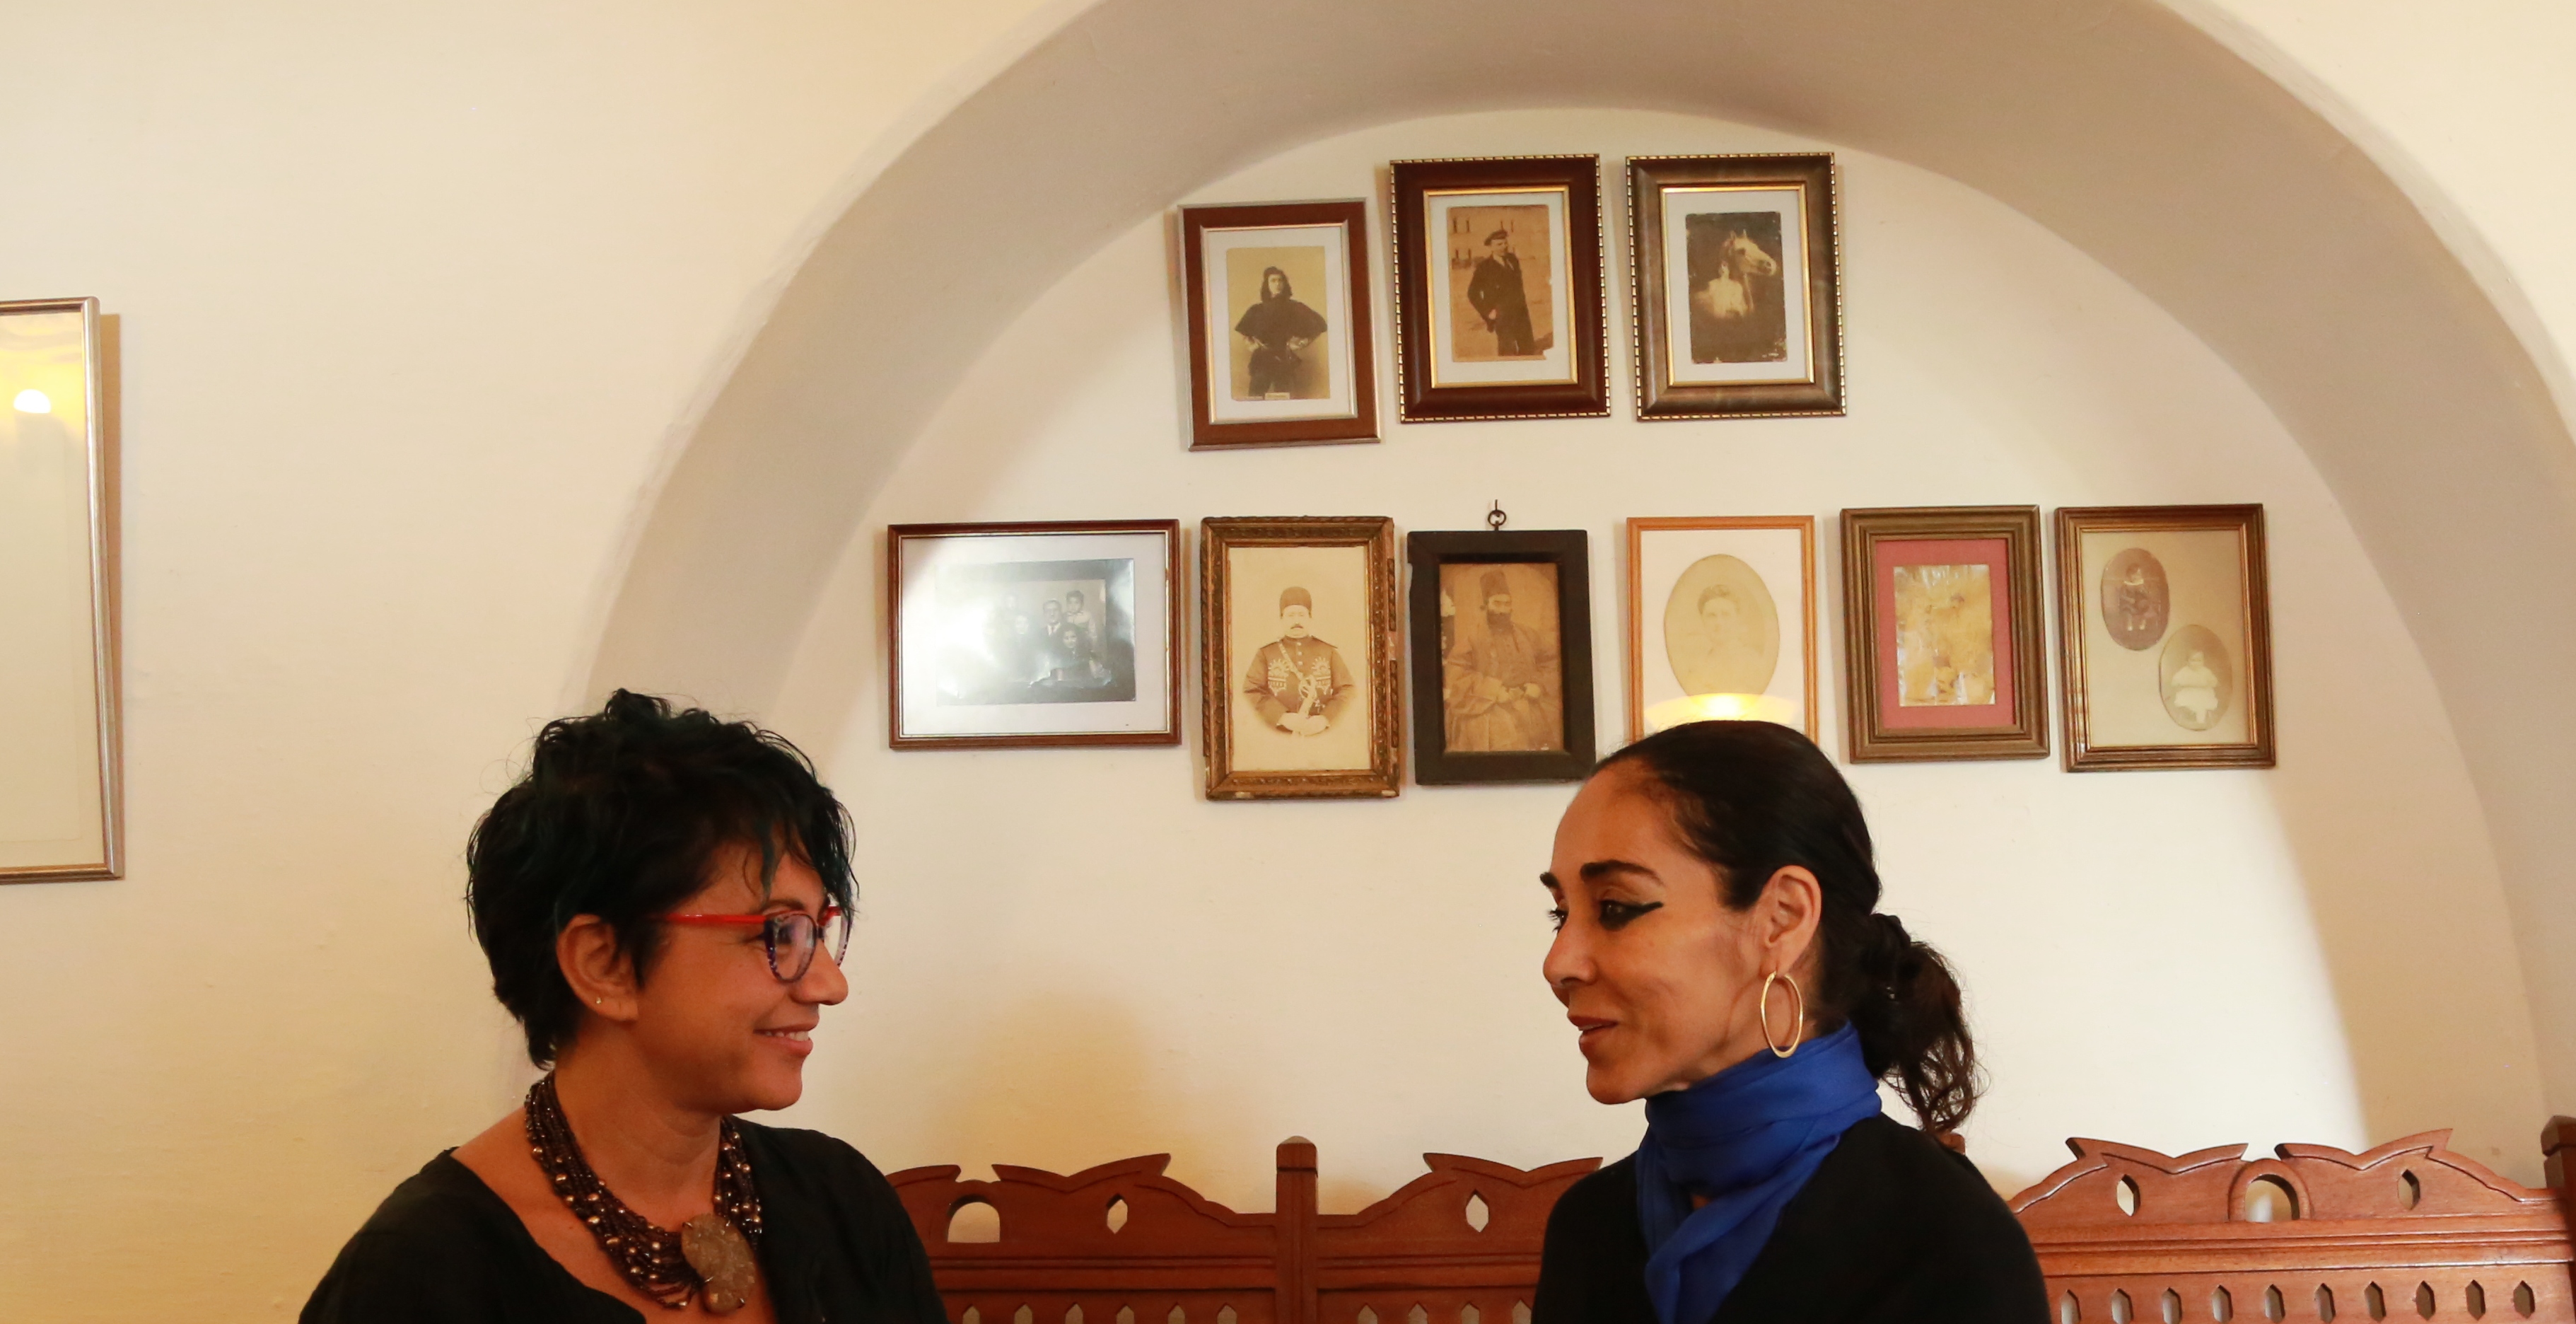 Shirin Neshat's interview